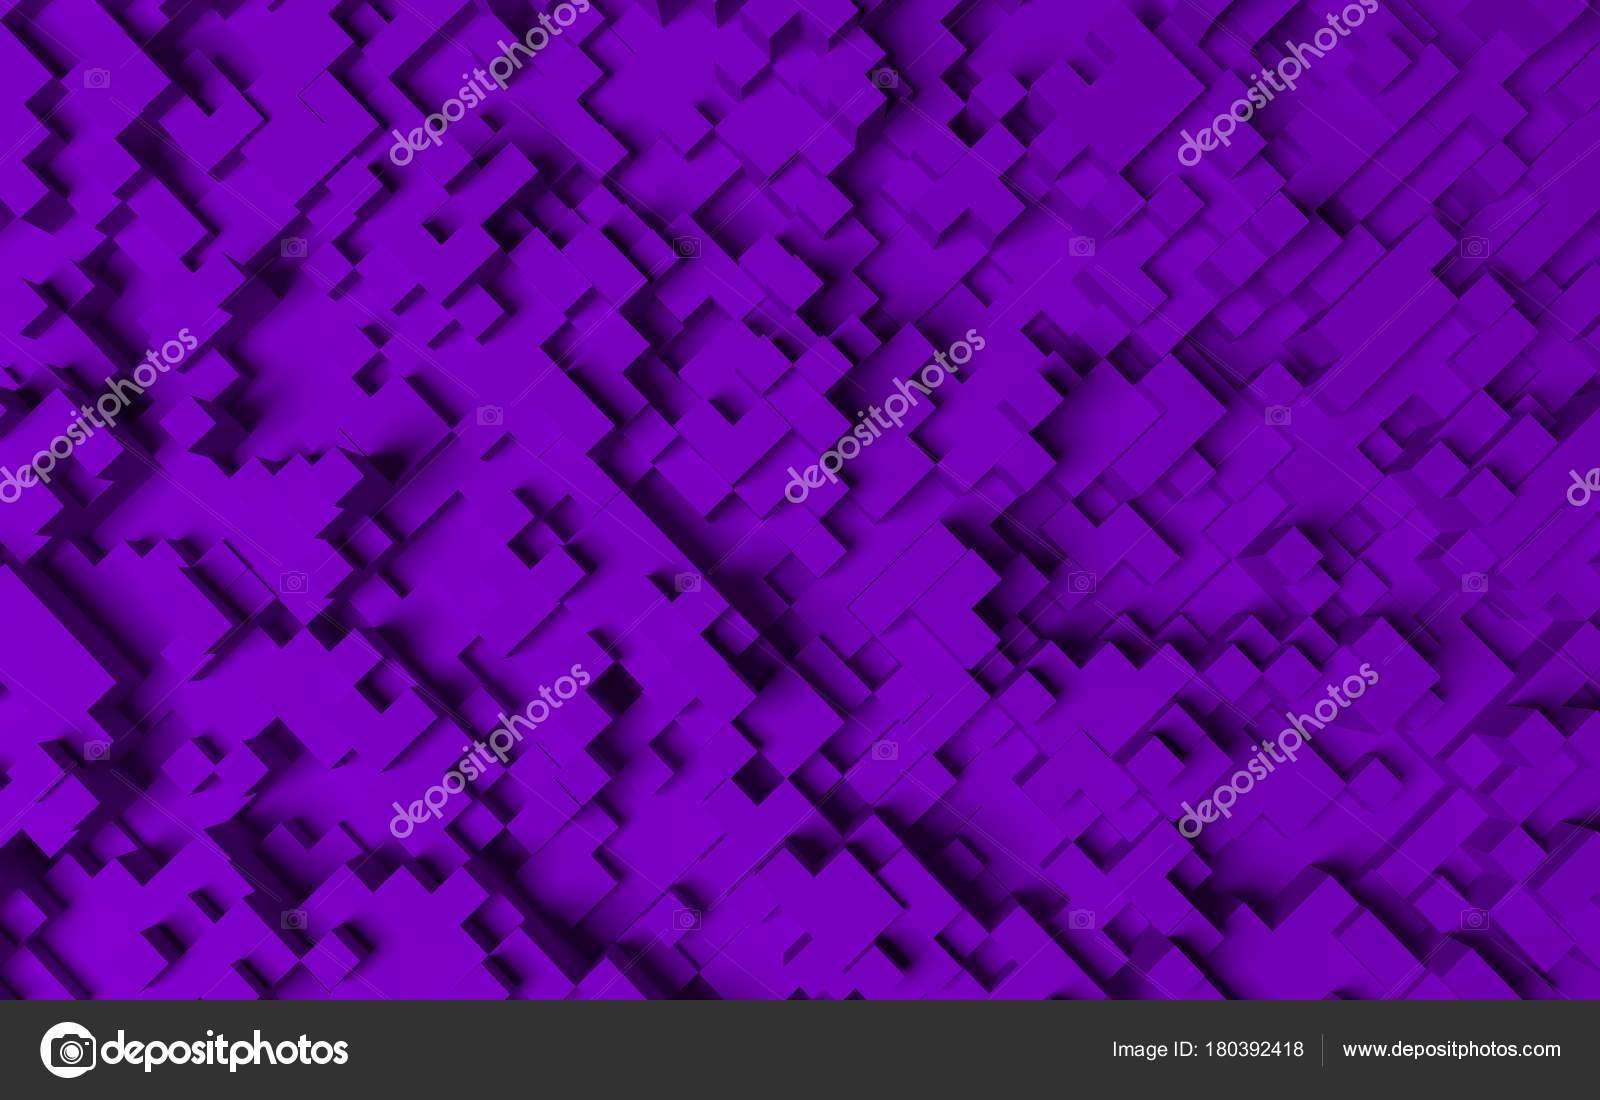 High Resolution Cubes - HD Wallpaper 